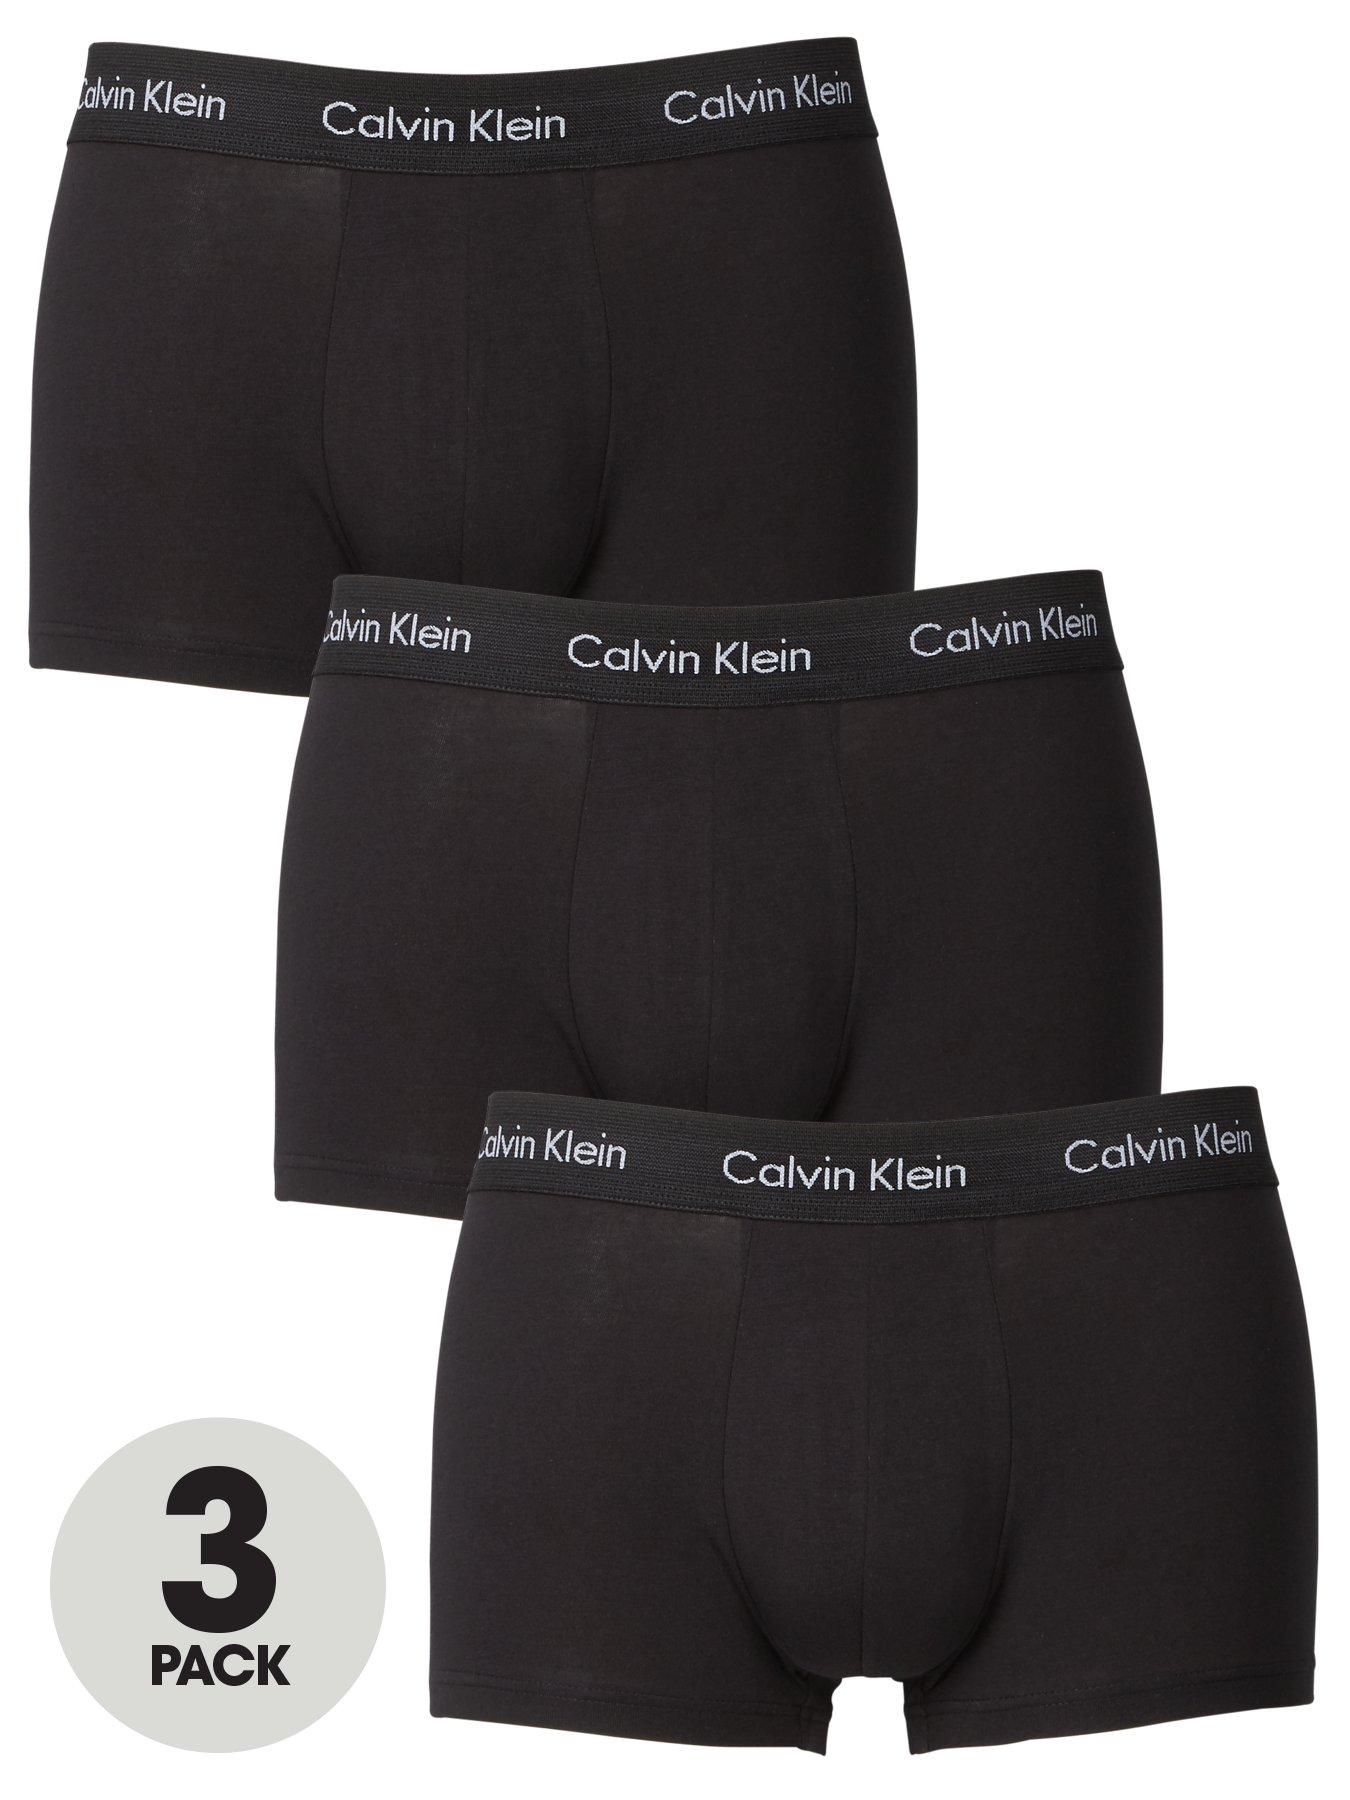 Calvin Klein Boxer Shorts & Athletic Underwear - Men - 516